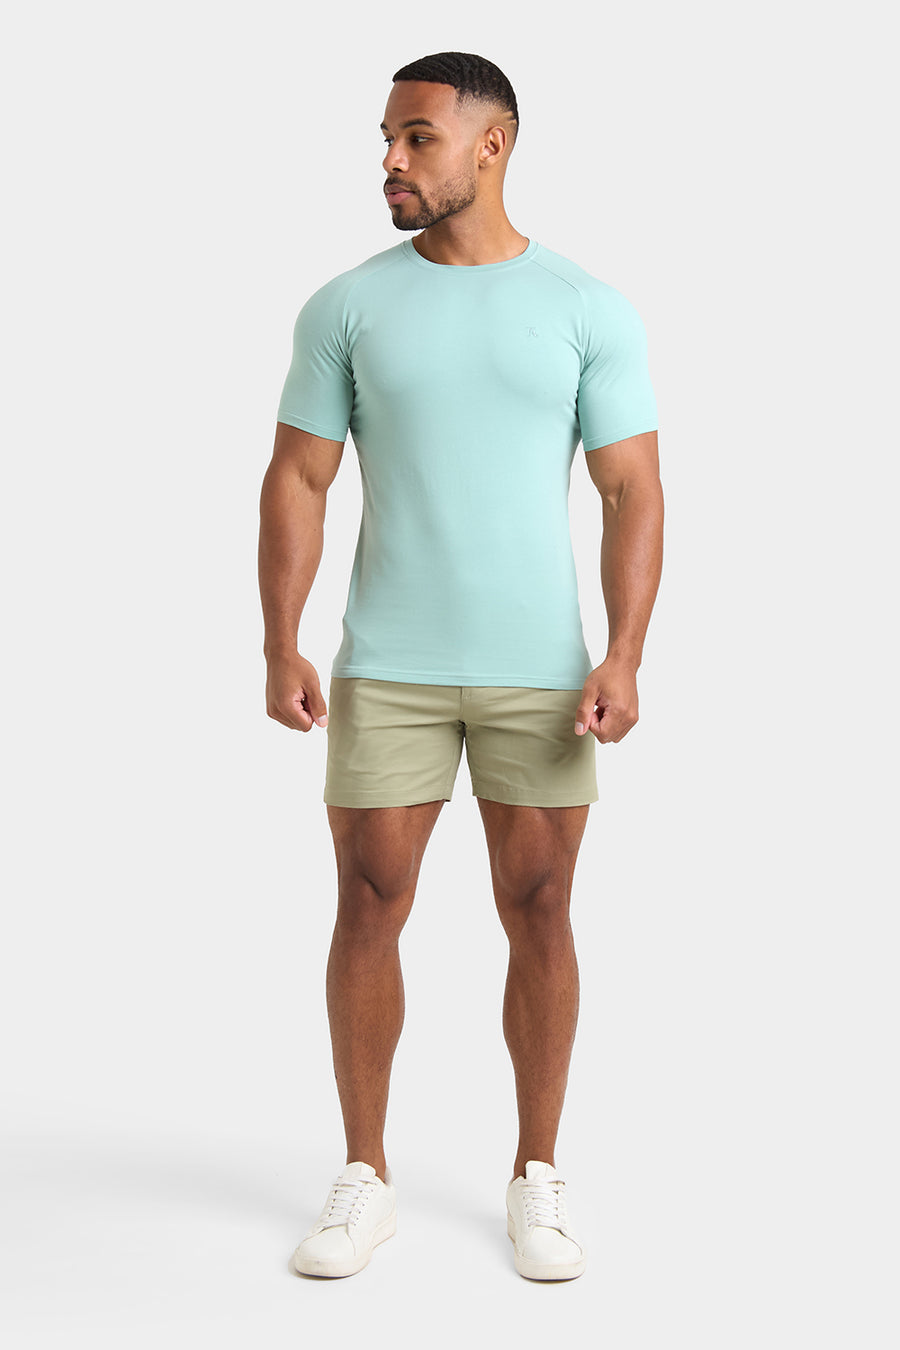 Premium Athletic Fit T-Shirt in Soft Aqua - TAILORED ATHLETE - USA